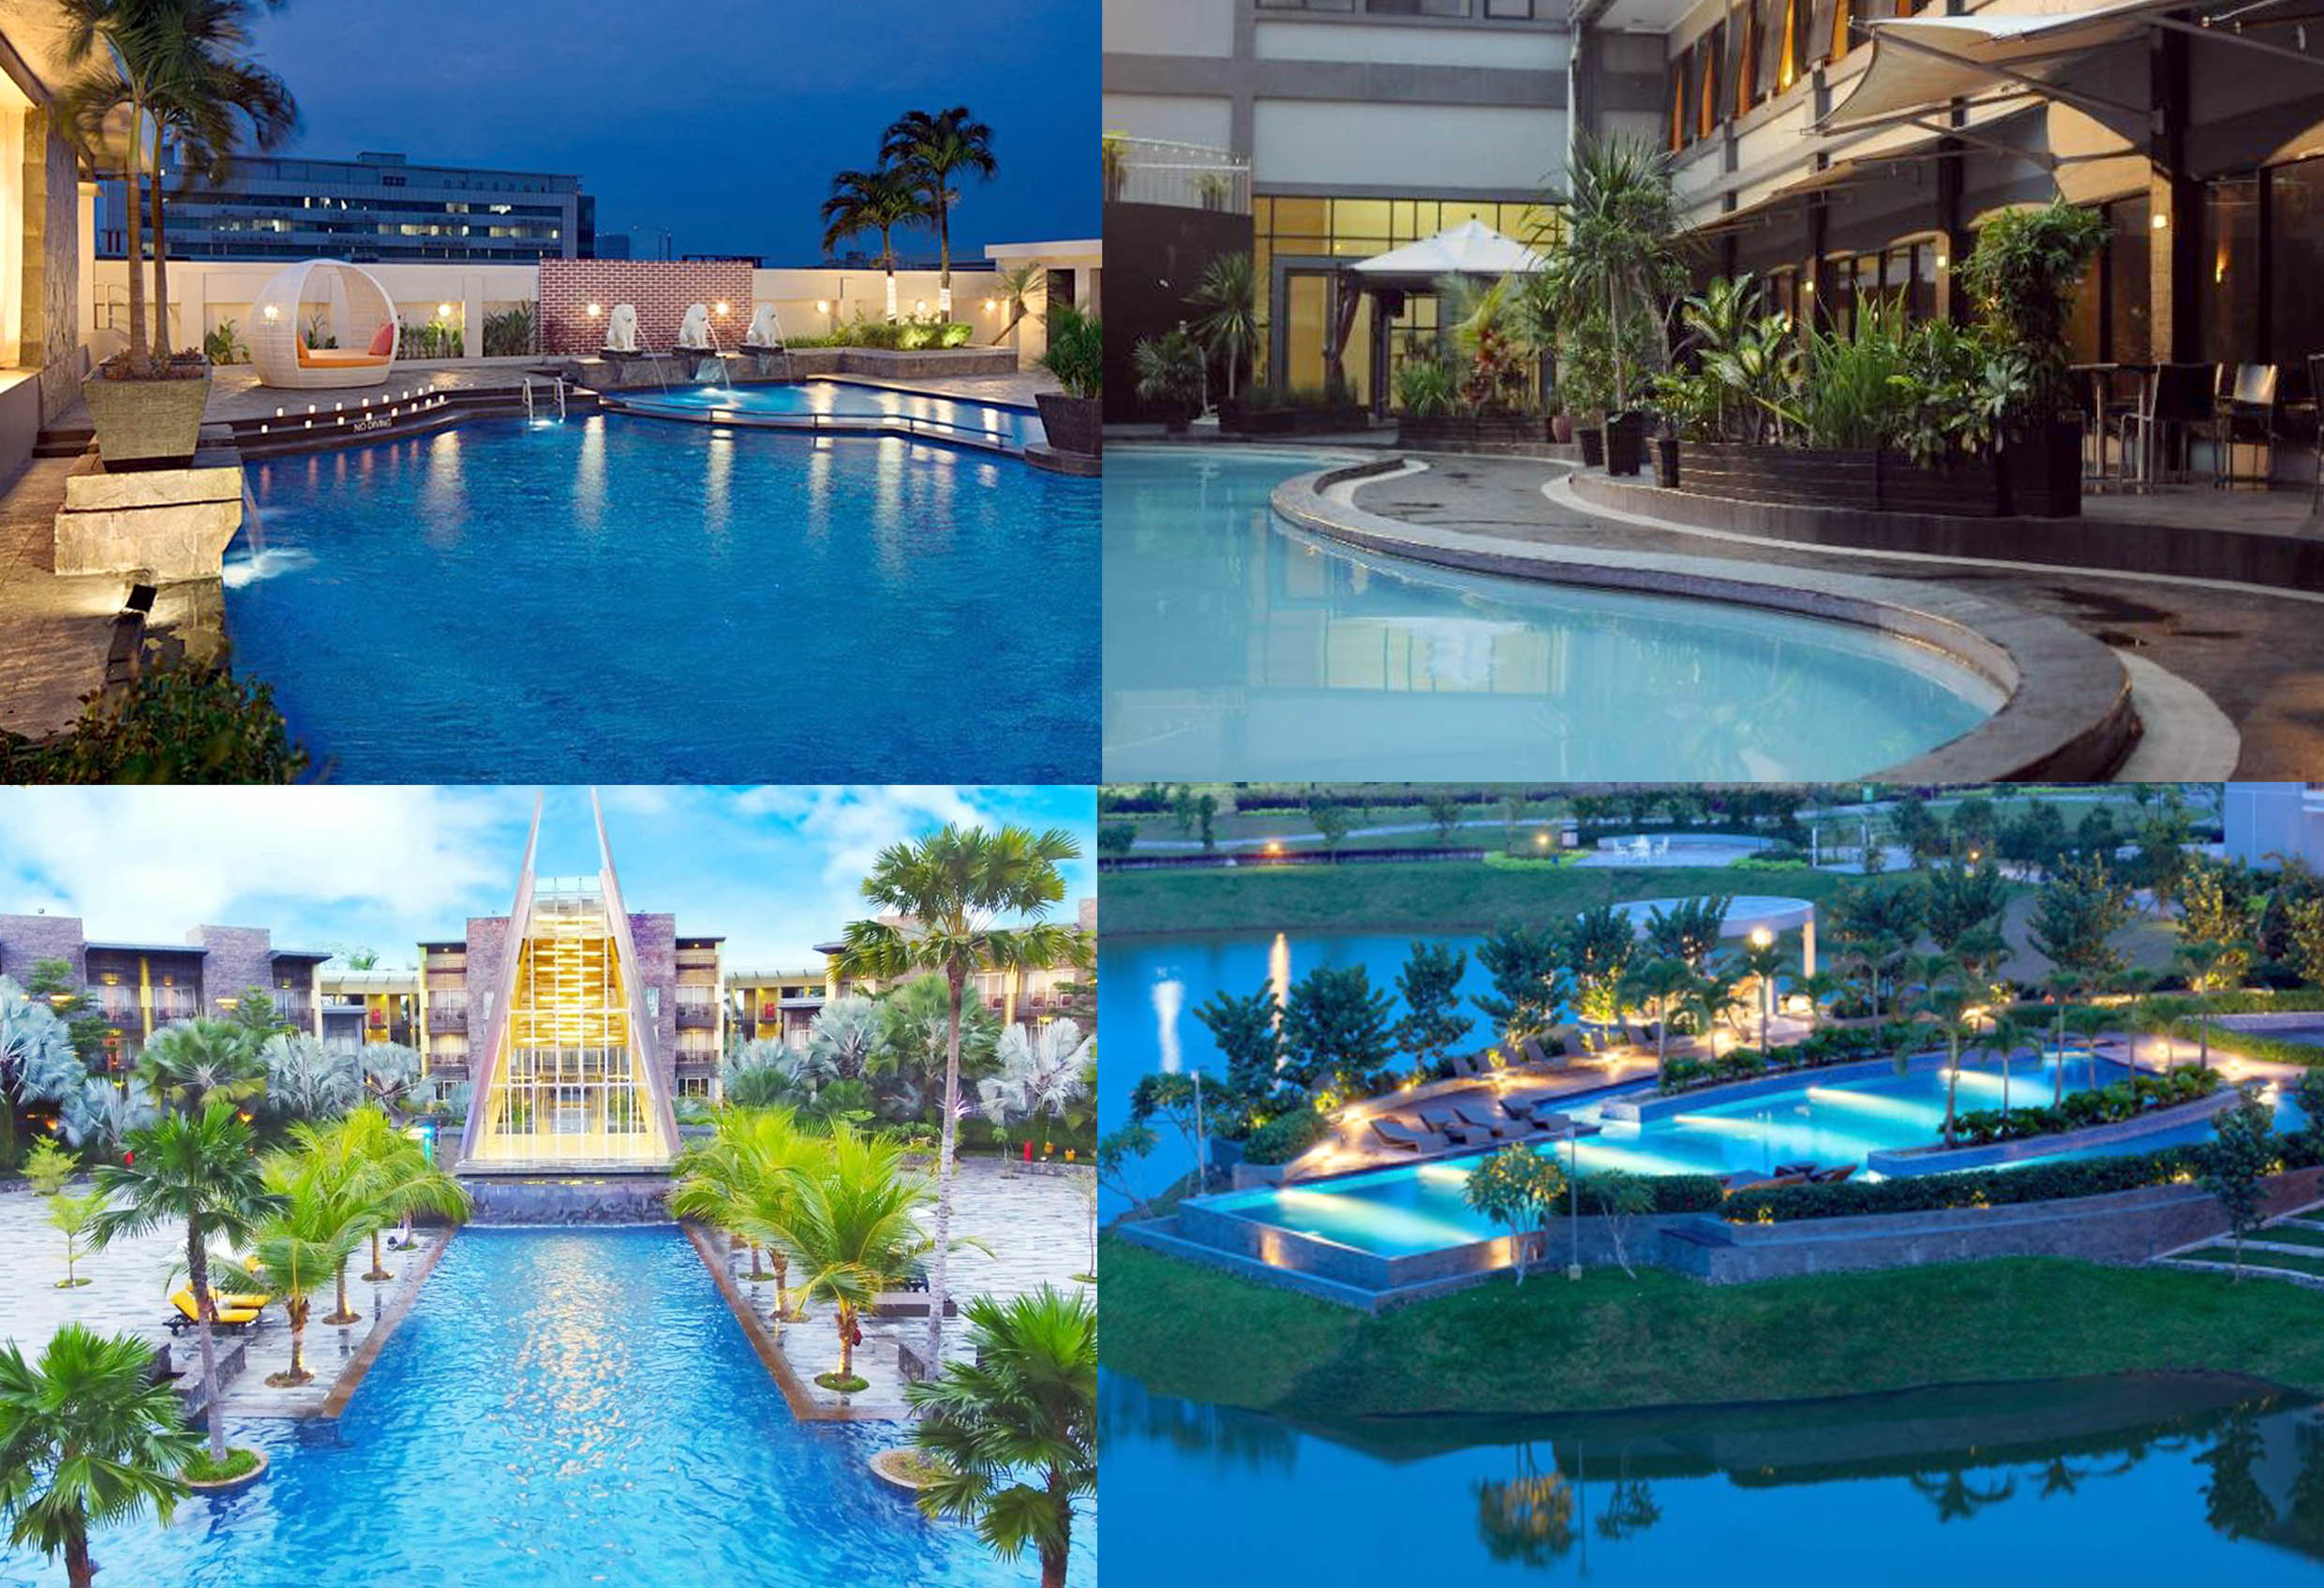 Memiliki Desain Ala Hawai! Ini Hotel Terbaik di Kota Palembang, Membuat Quality Time Anda Lebih Berkesan